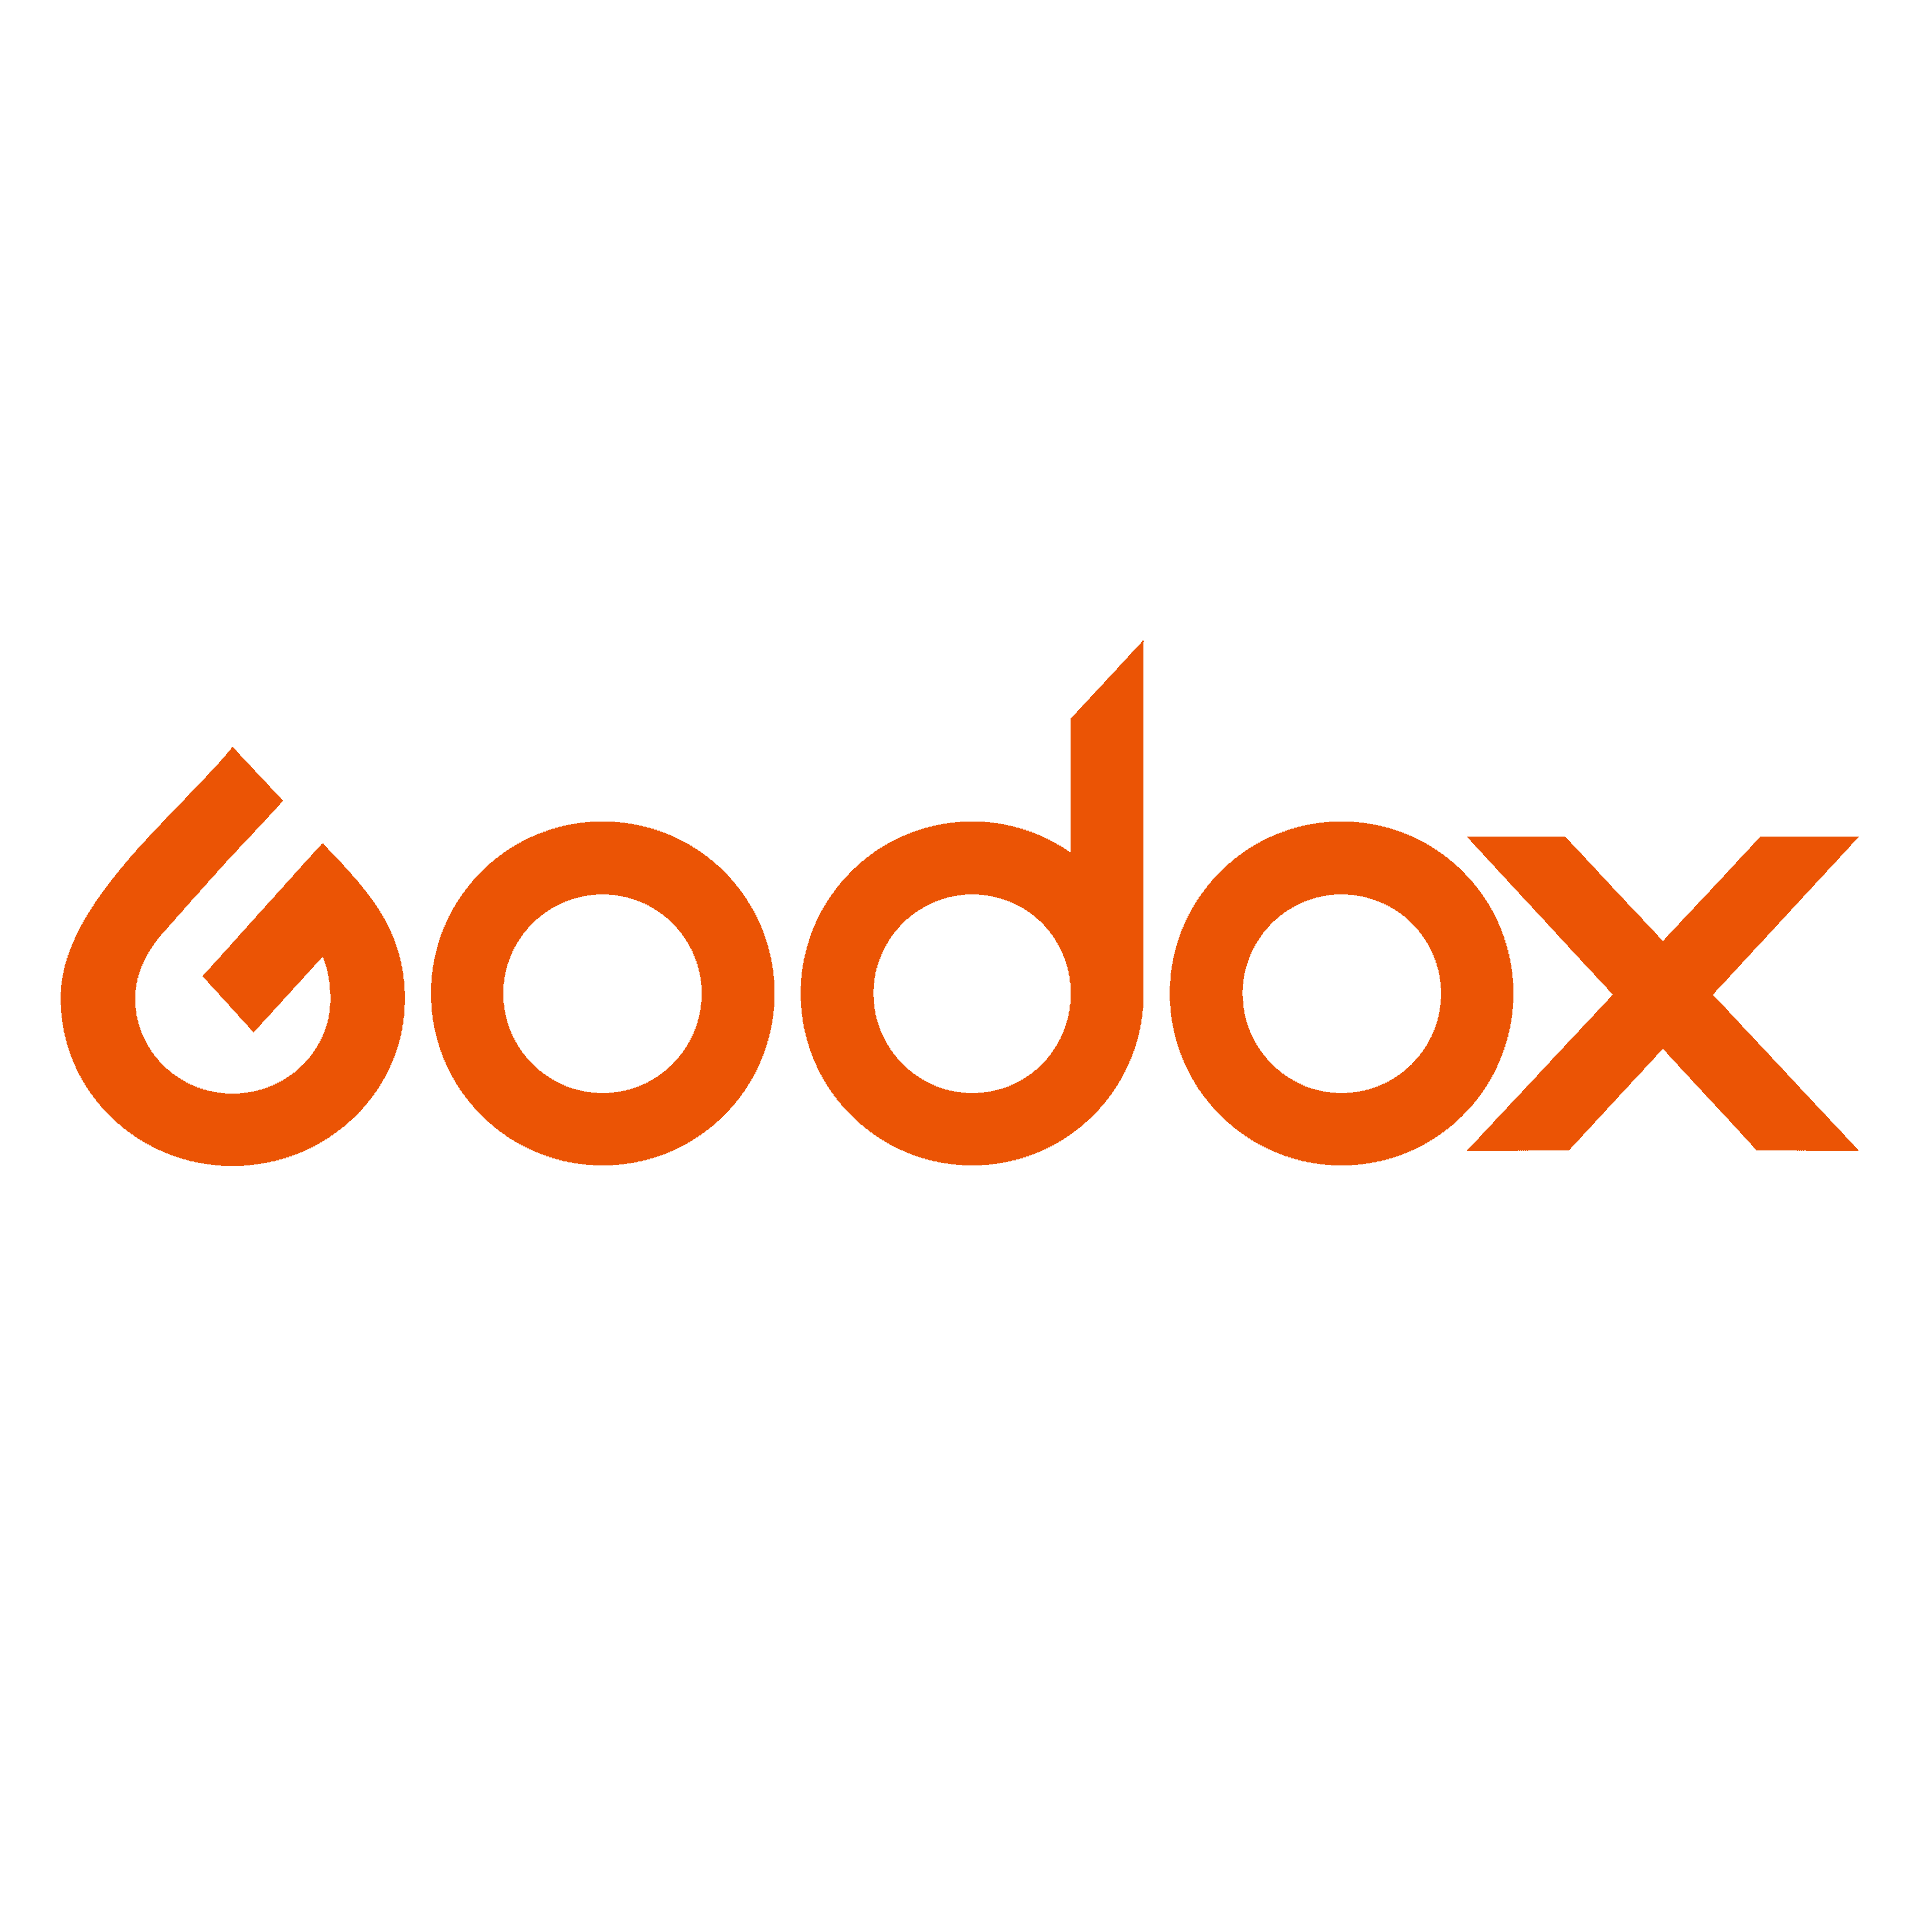 Logo Godox